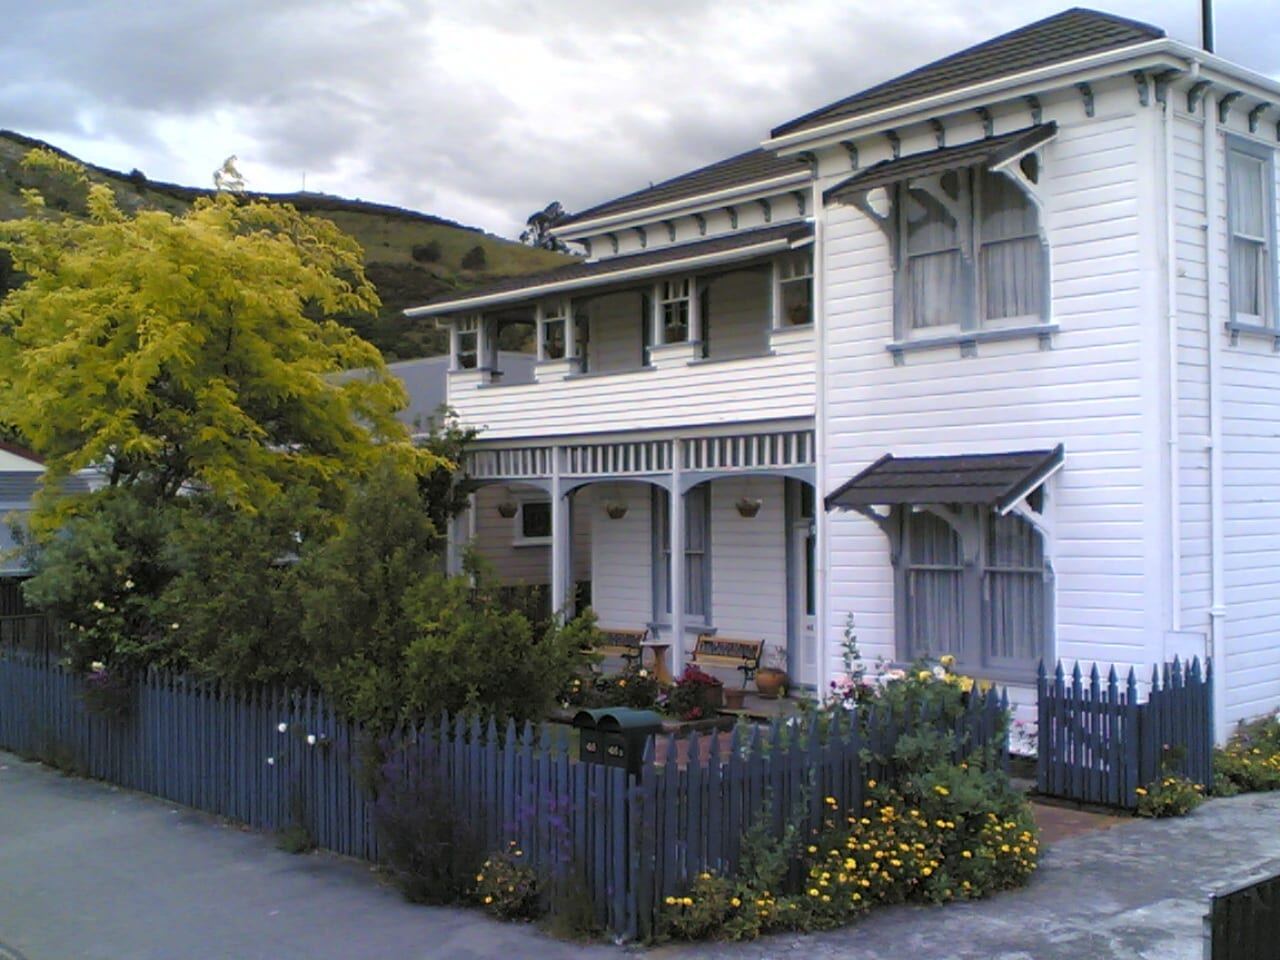 1897 Amber House con el centro de Nueva Zelanda visible por encima de la línea del techo). Nelson Nueva Zelanda